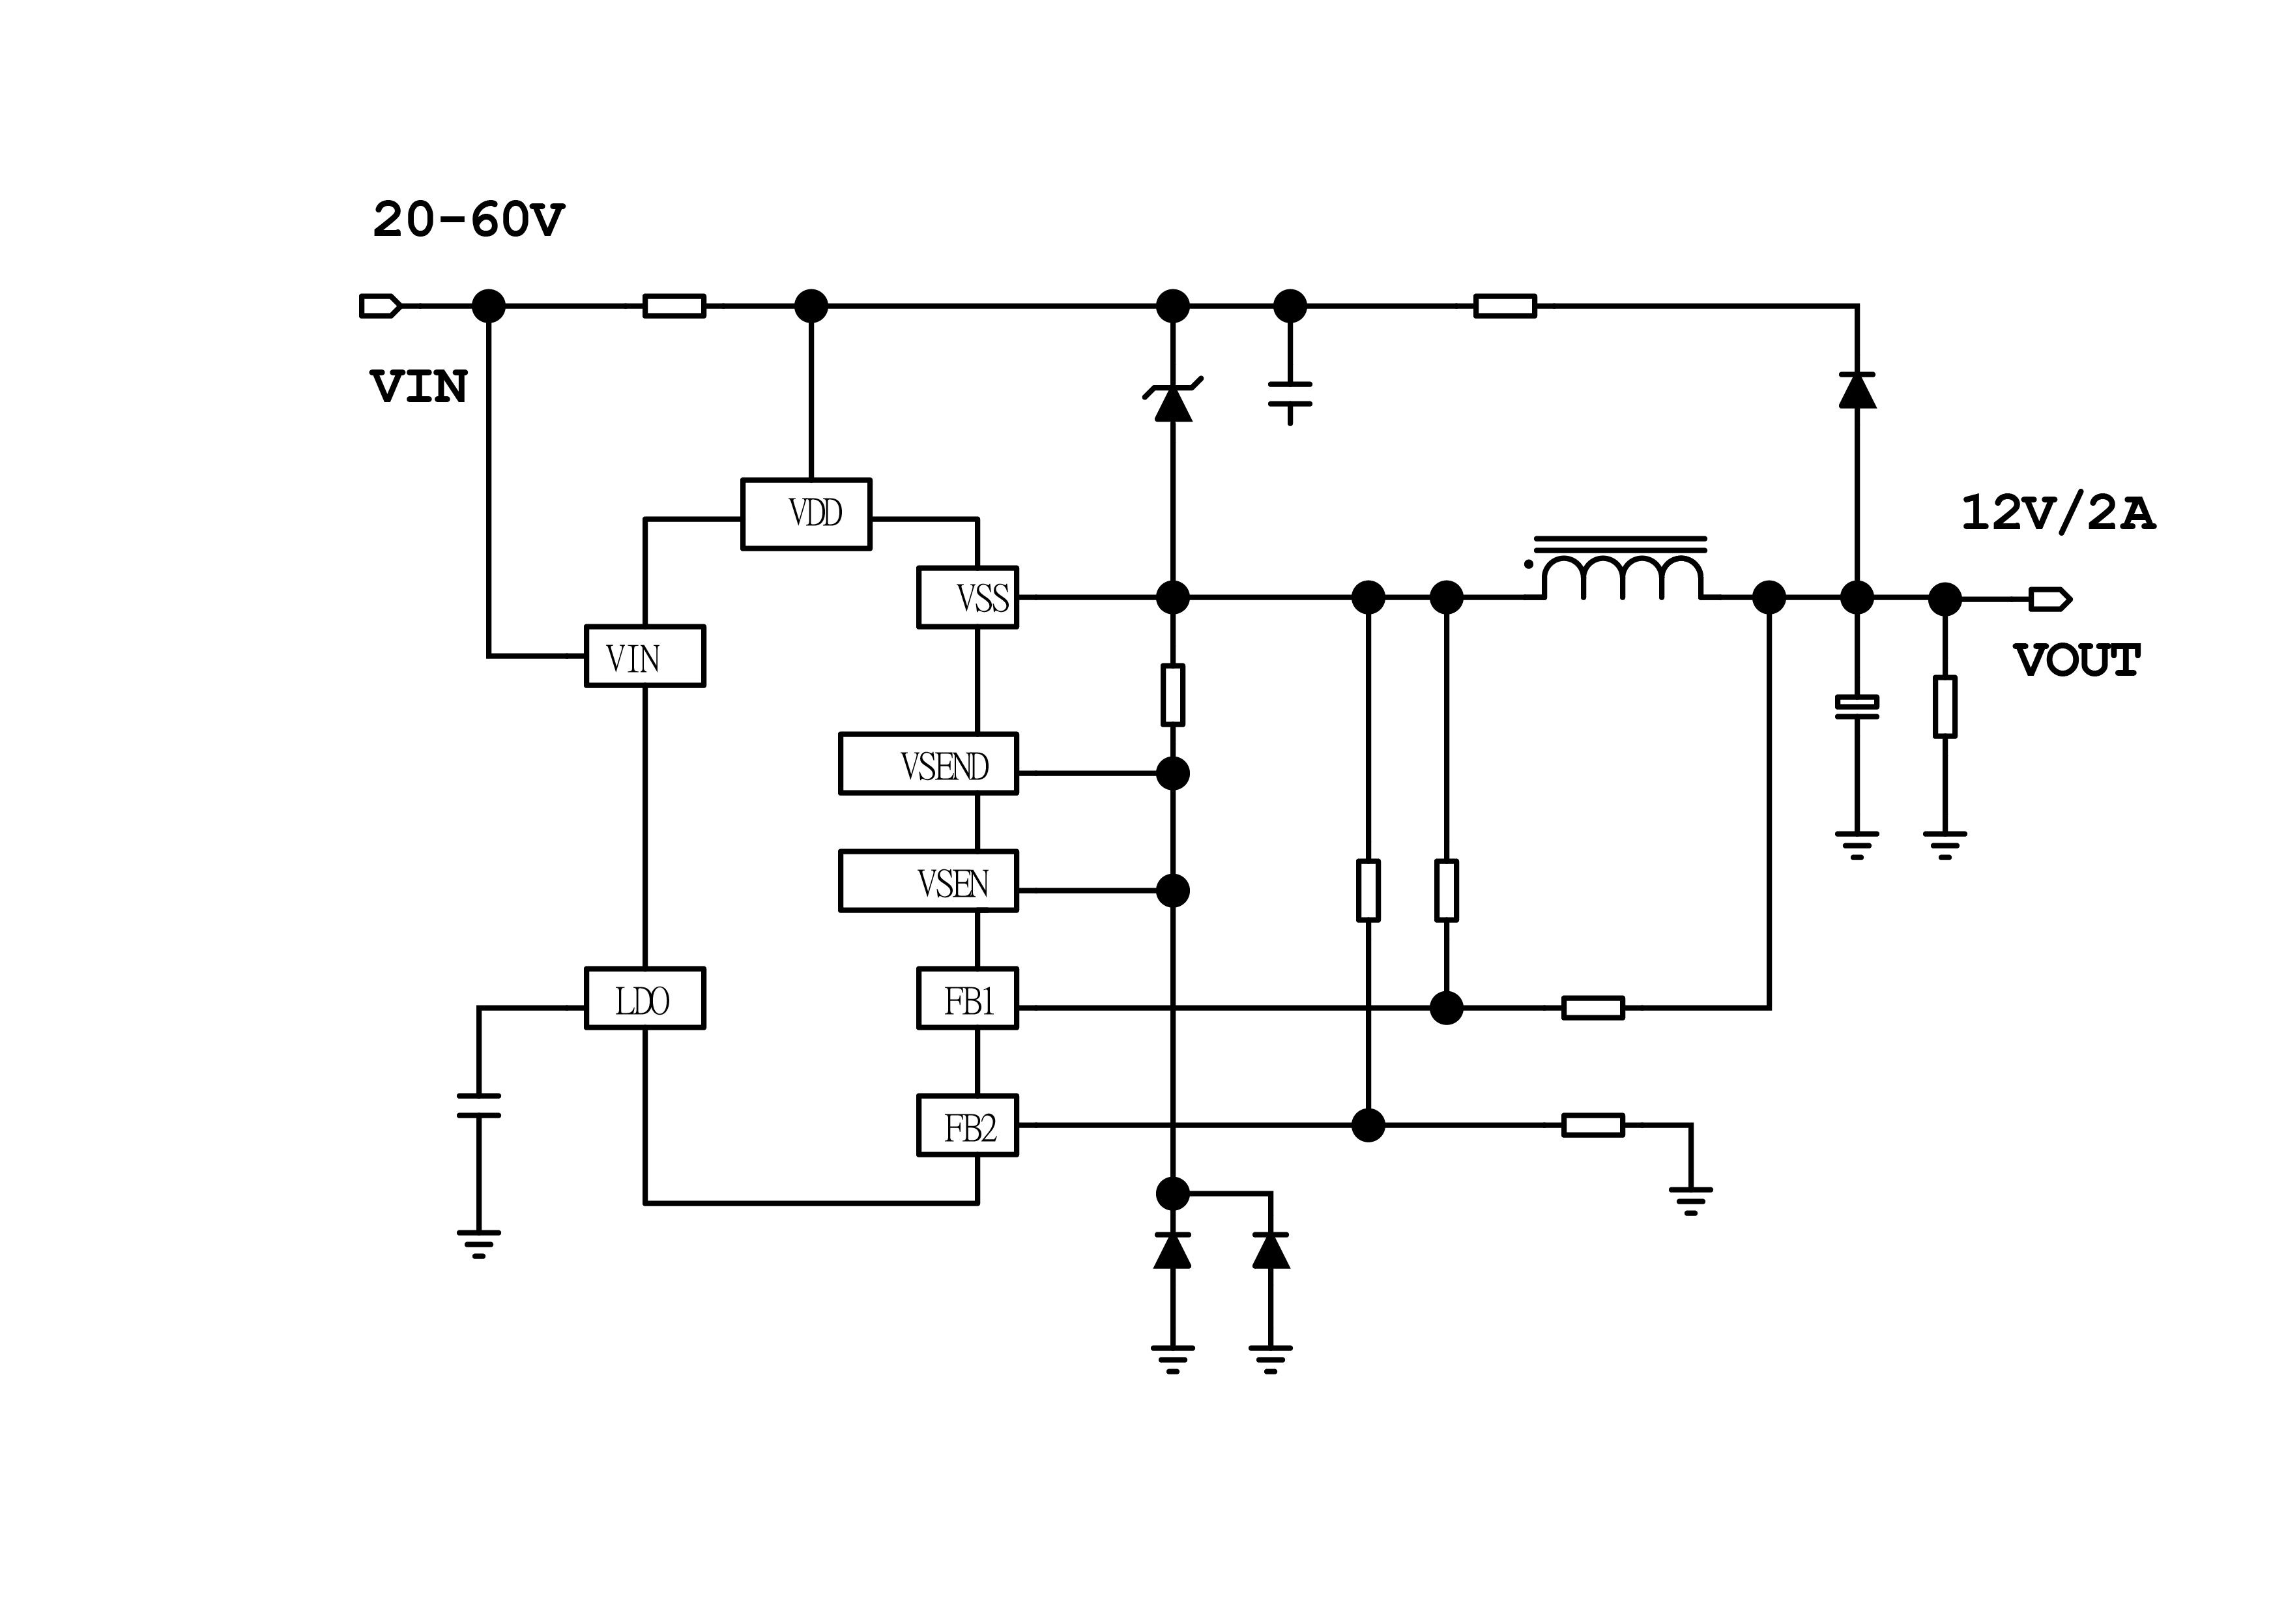 基于芯鼎盛TX4130设计的POE电源DC-DC降压芯片说明,poYBAGKBv9SAVOXtAAKAwcSSD9I736.jpg,第2张